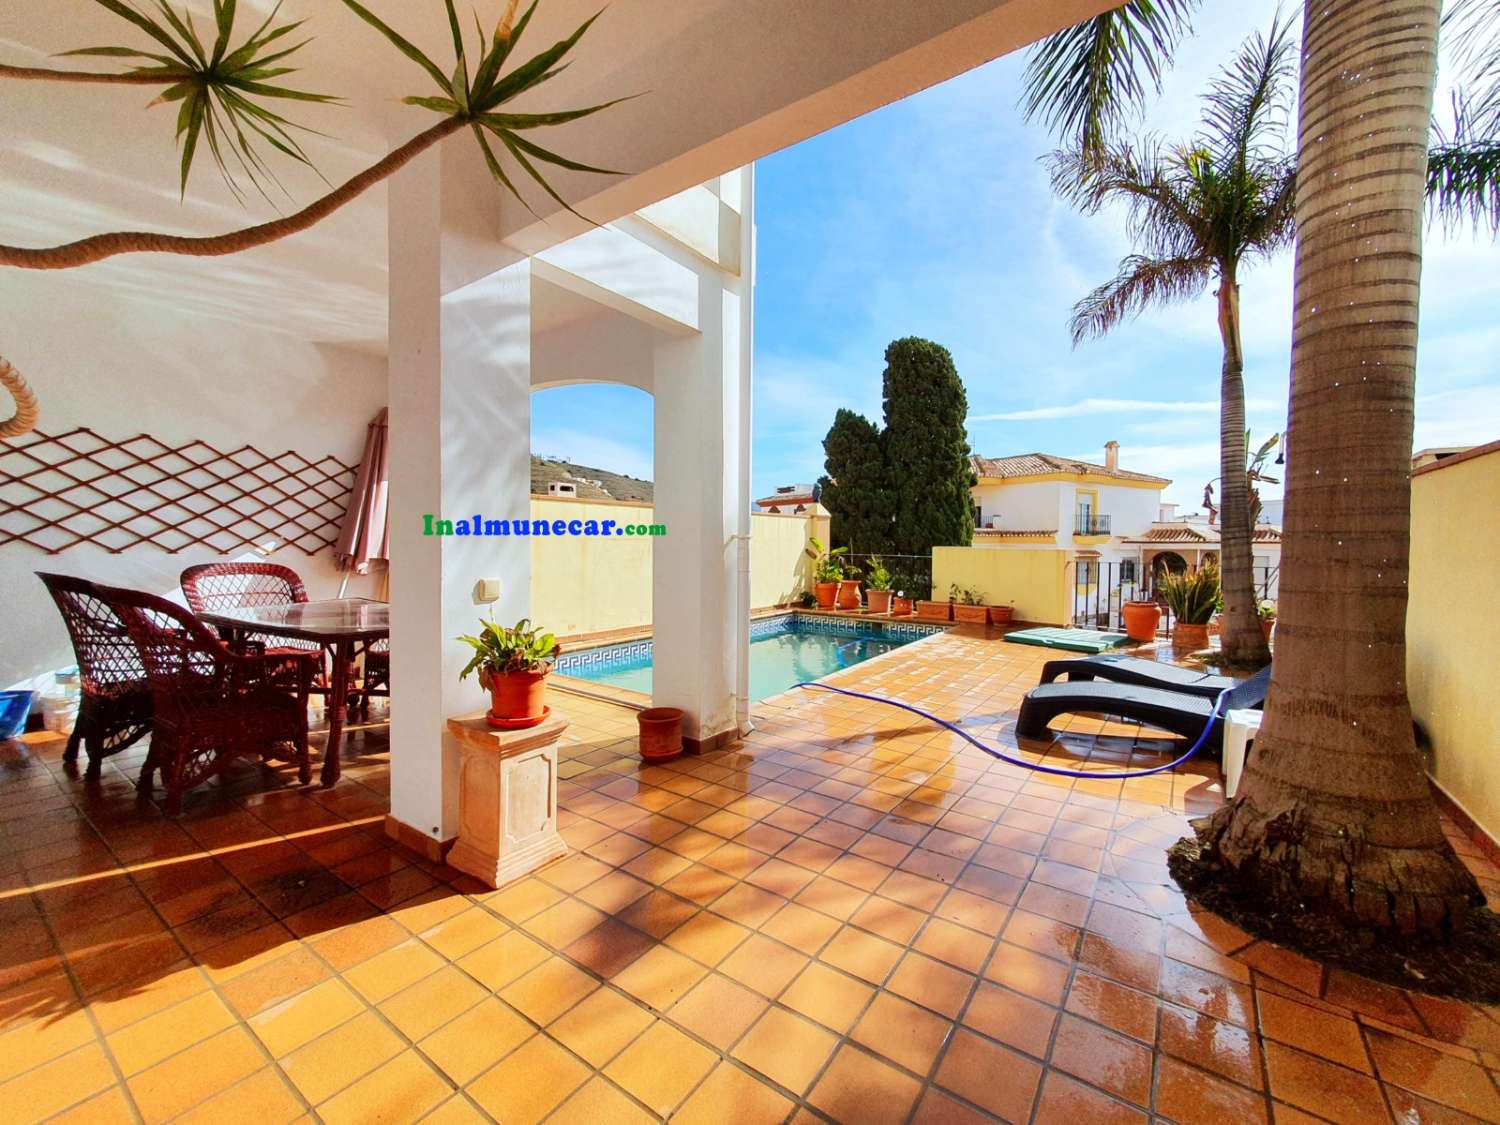 Rækkehus til salg i Almuñecar, meget solrig og med privat pool.